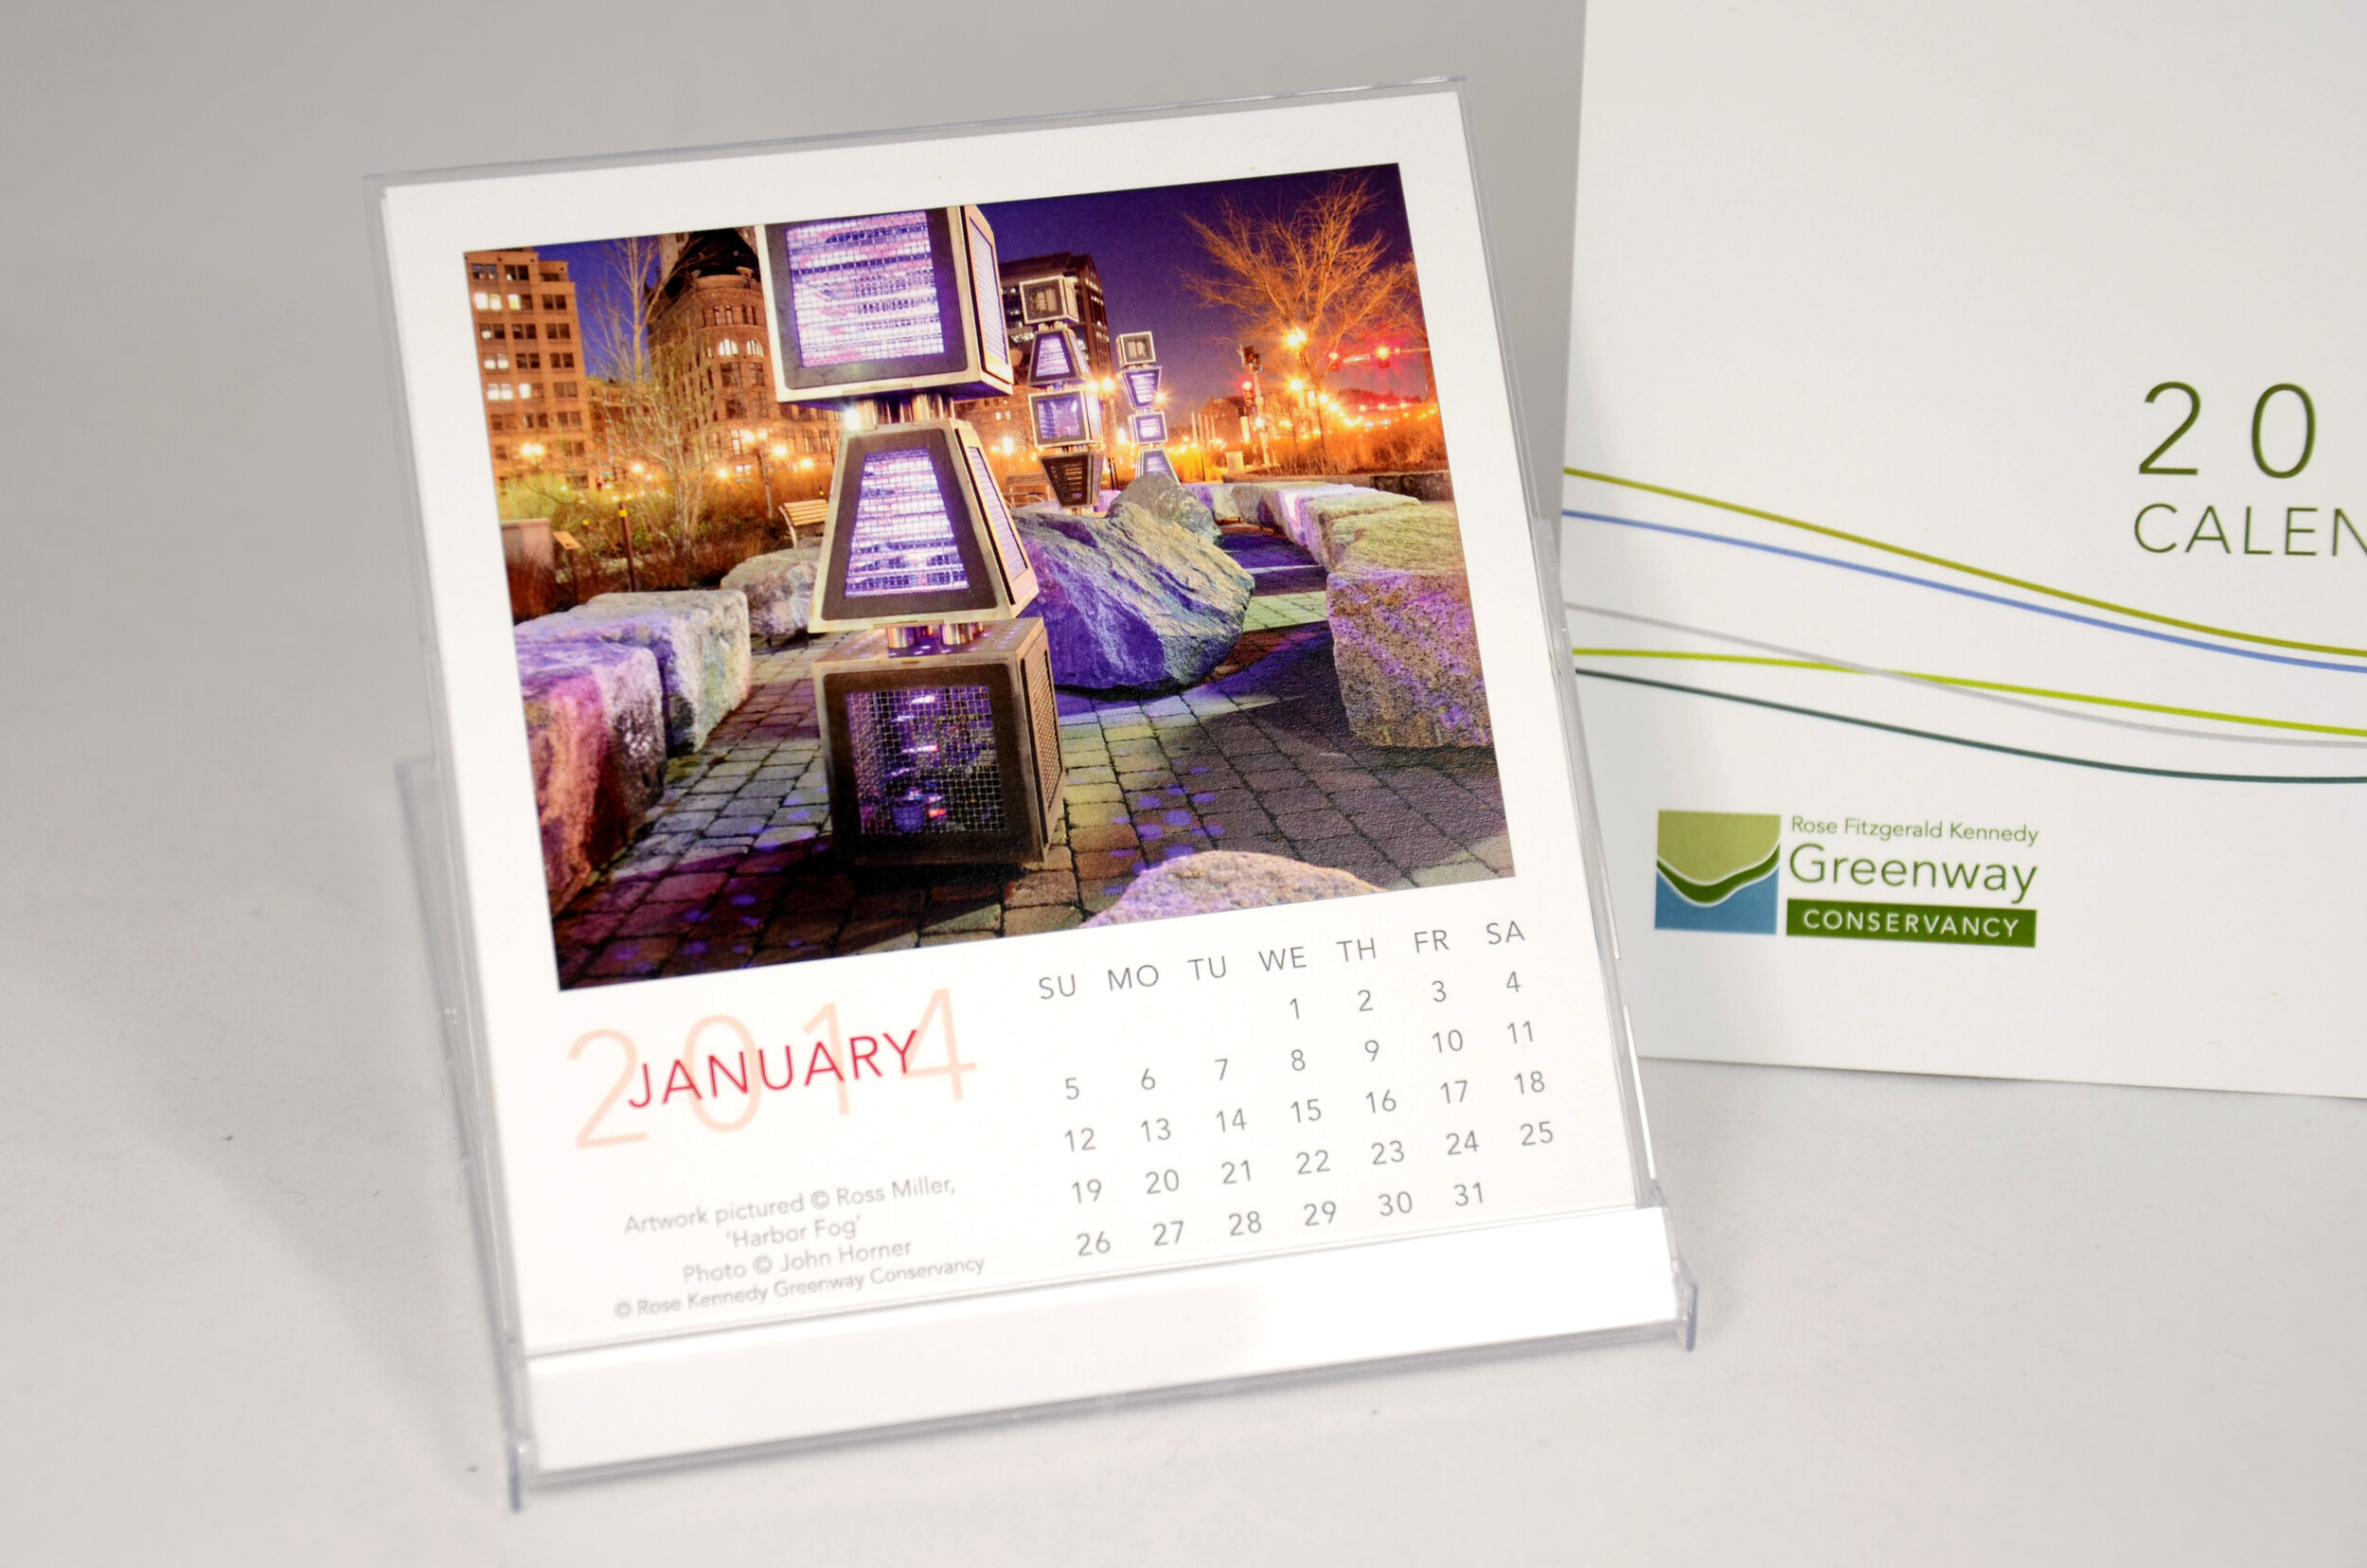 Greenway-Calendar-2014-c.jpg